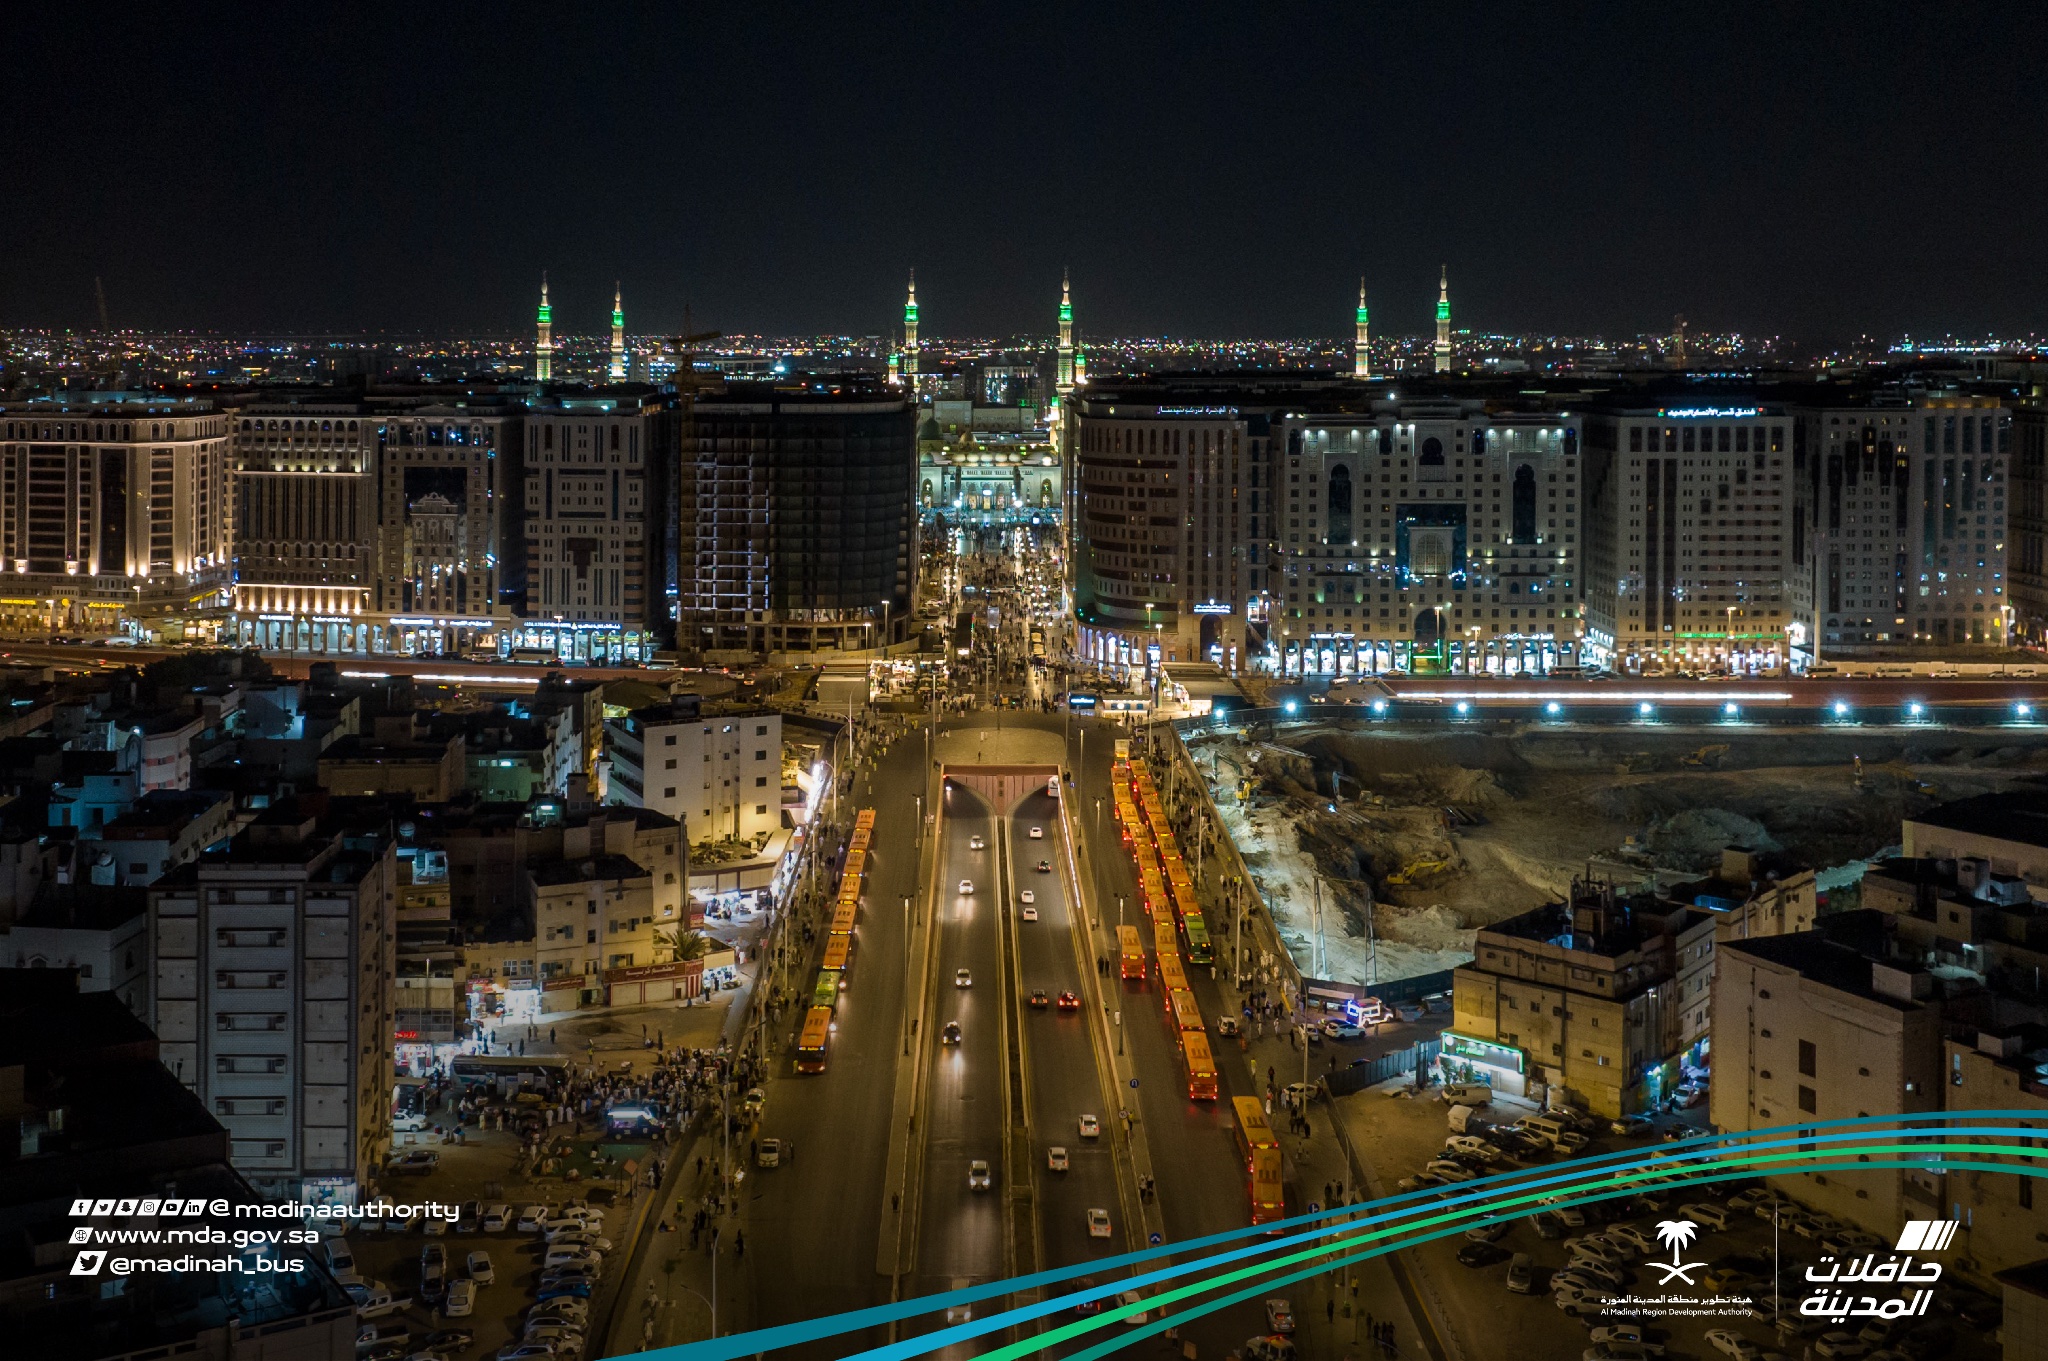  أكثر من 150 ألف مستفيد من خدمات النقل الترددي بالمدينة المنورة خلال الثلث الأول من رمضان